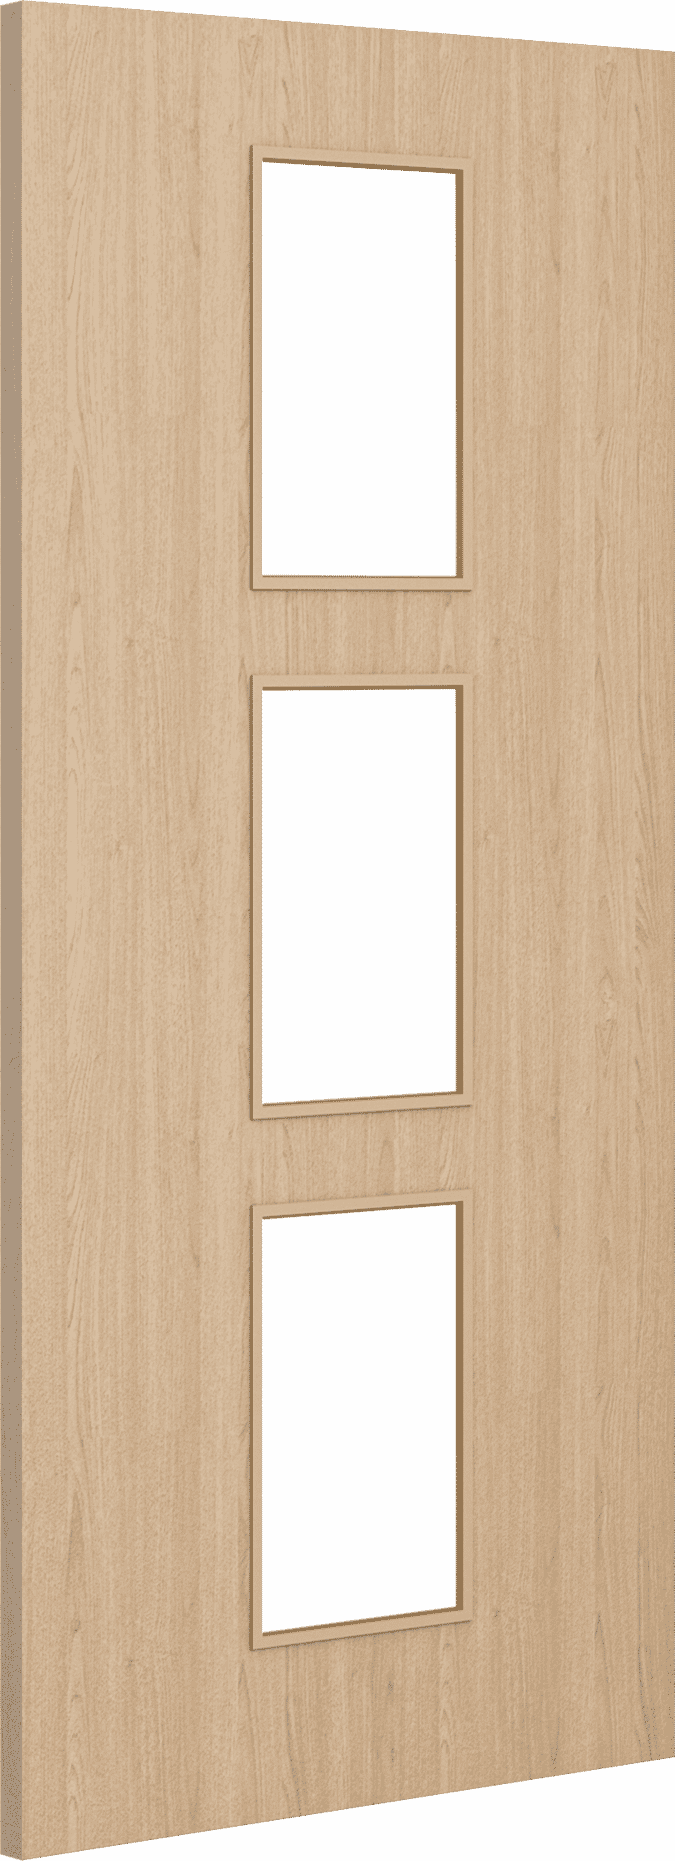 1981mm x 762mm x 54mm (30") Architectural Oak 11 Clear Glazed - Prefinished FD60 Fire Door Blank